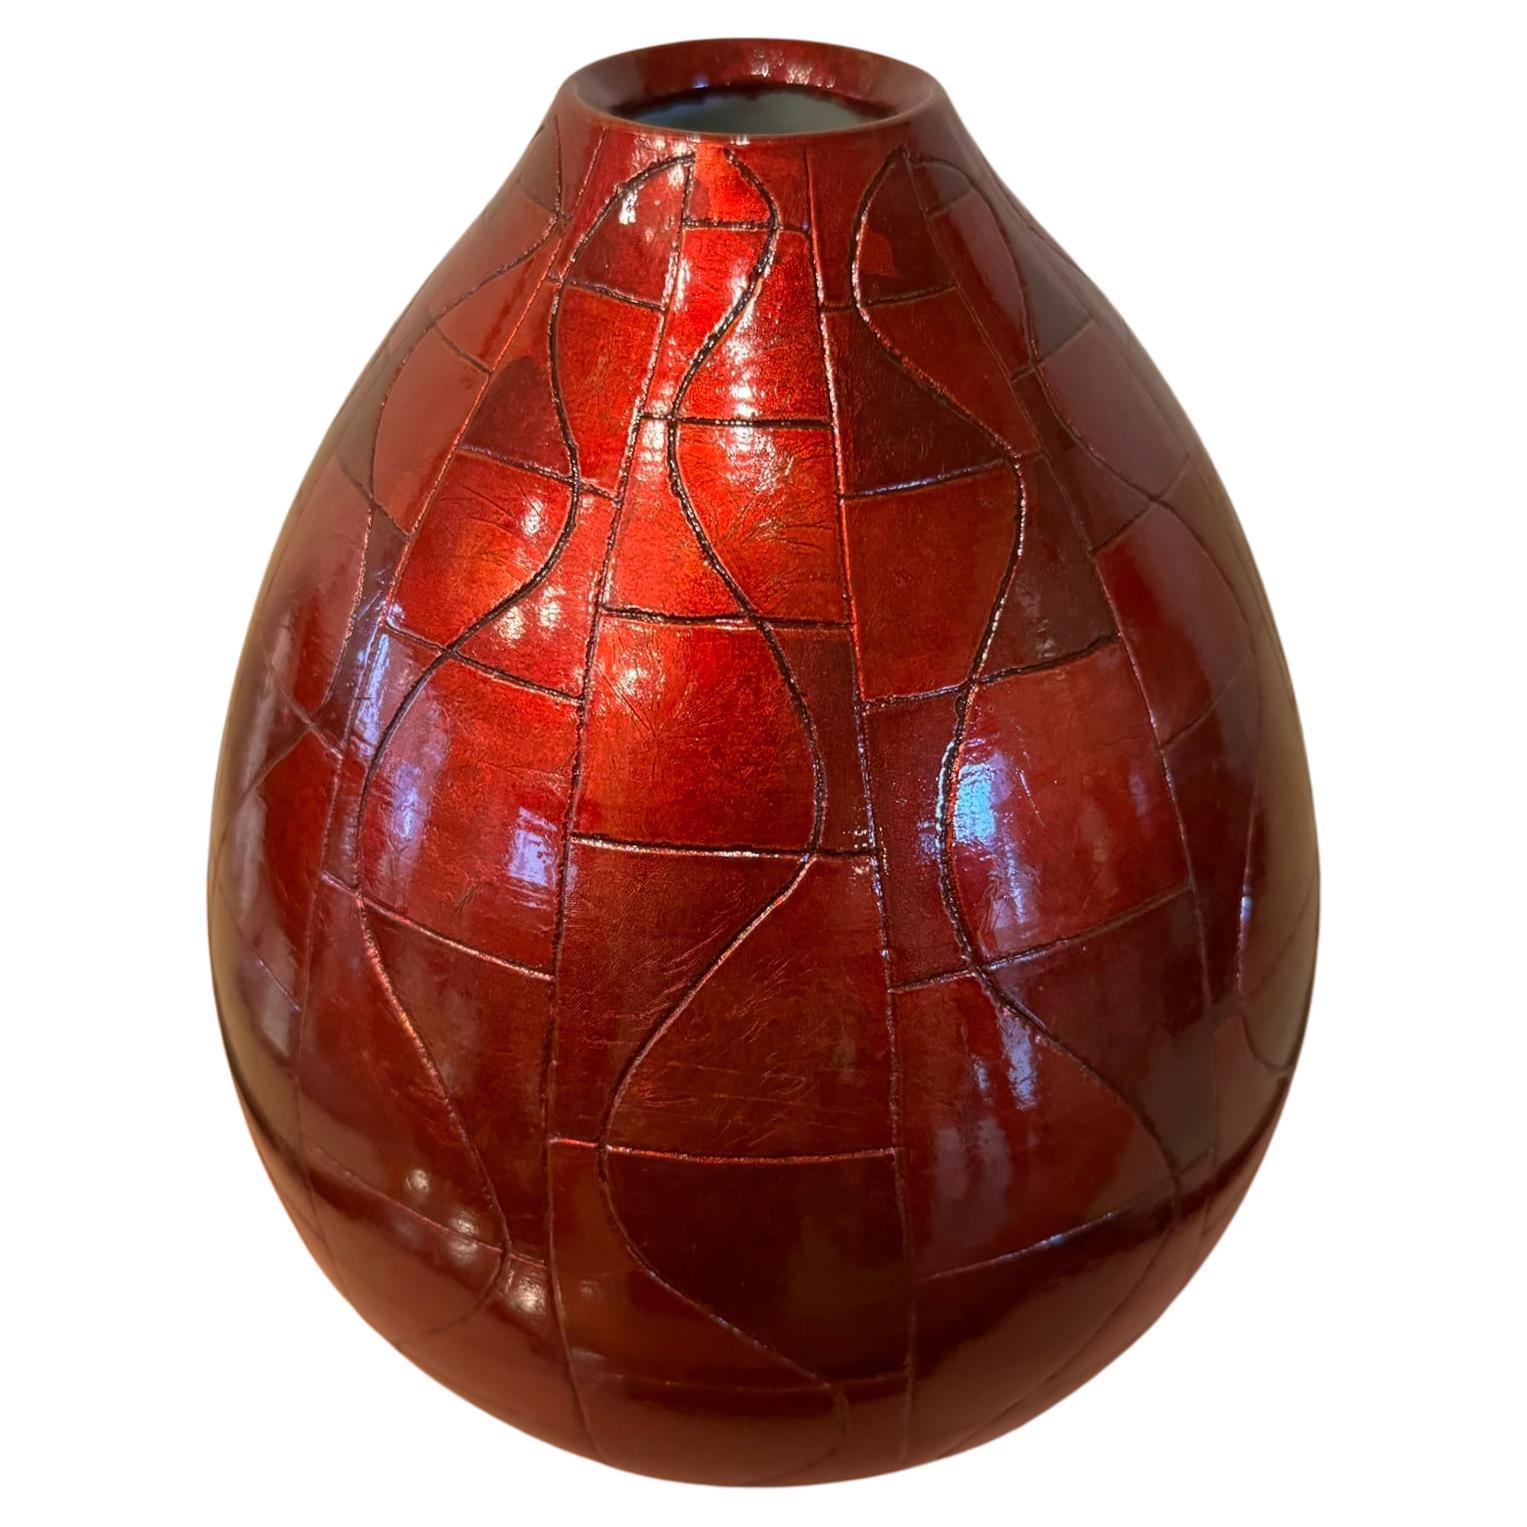 Exquis vase en porcelaine décorative japonaise contemporaine de qualité muséale, de forme étonnante, orné de feuilles d'argent d'une grande pureté, teintées de quatre magnifiques nuances de rouge, méticuleusement disposées pour créer un motif en